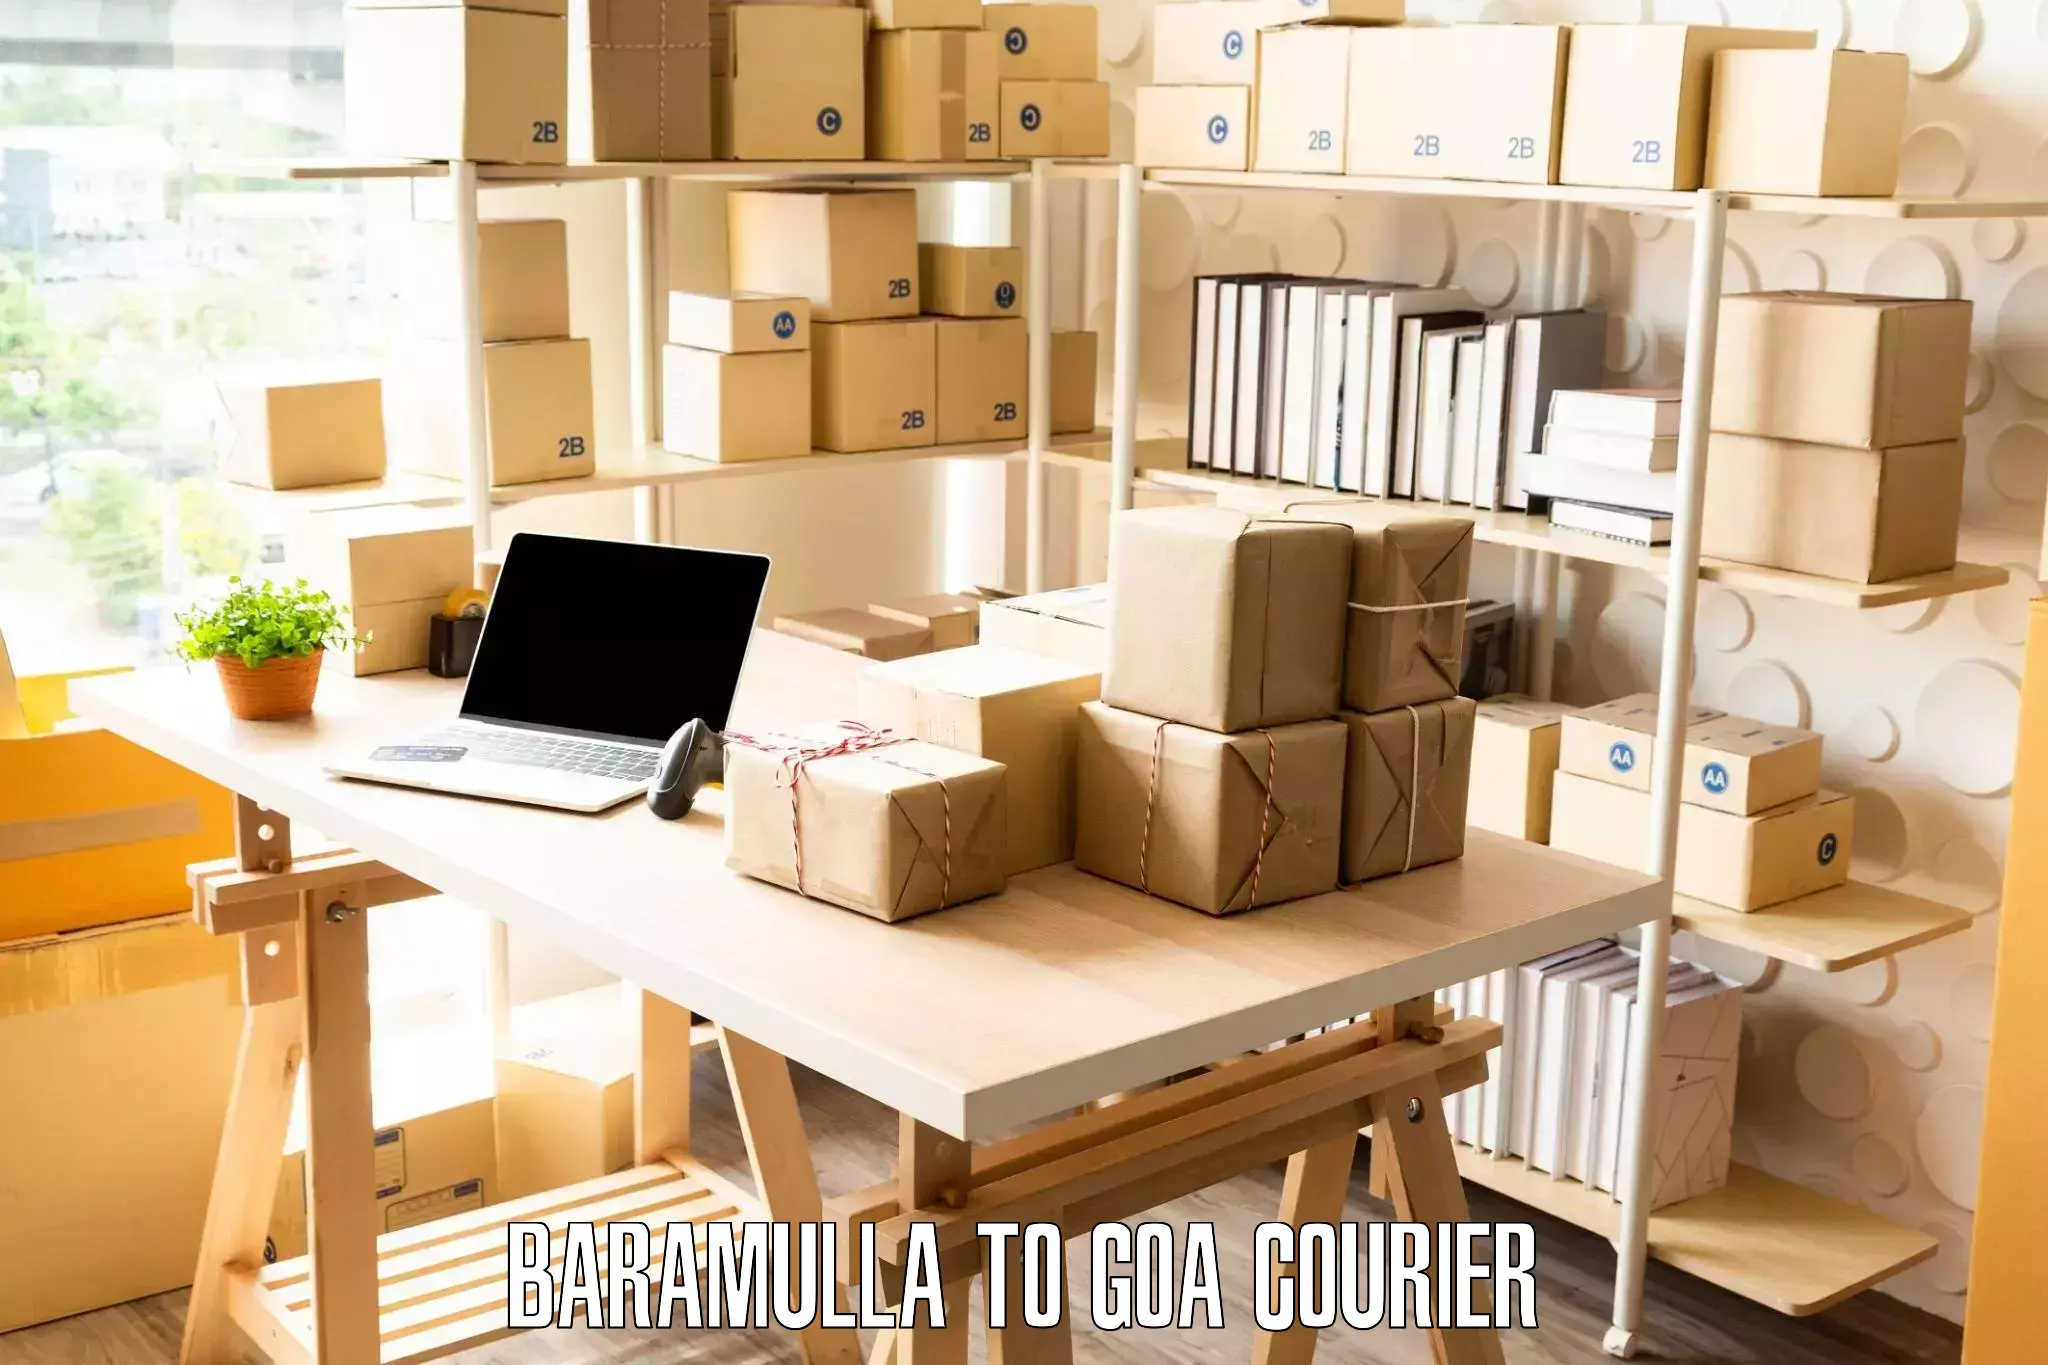 Furniture delivery service in Baramulla to Vasco da Gama